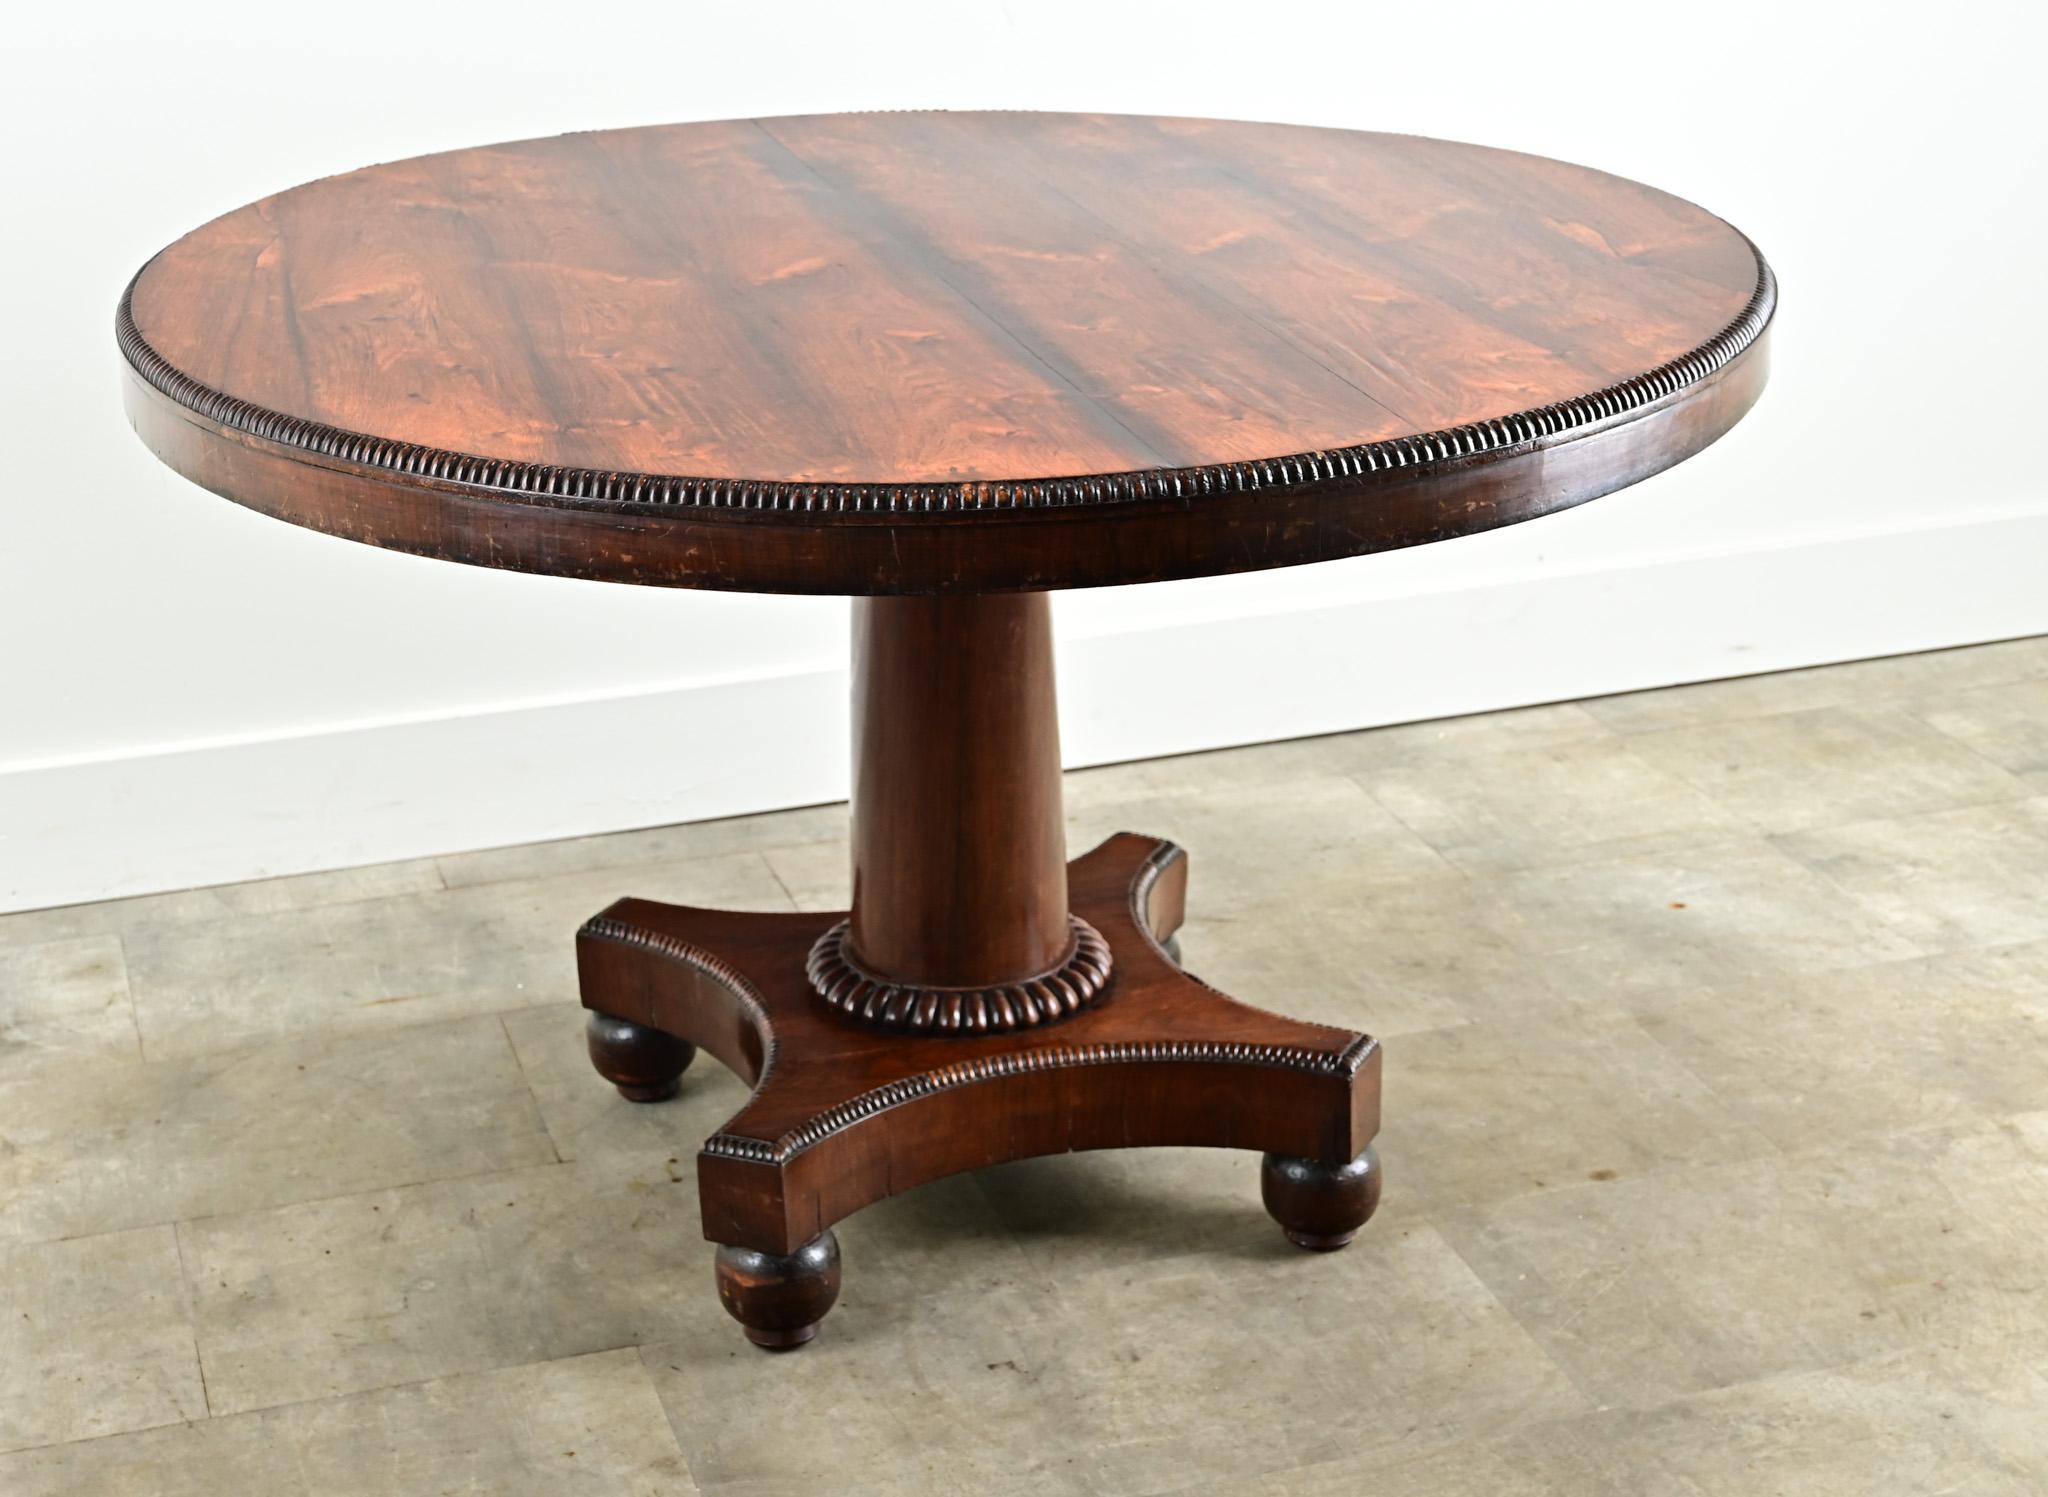 La table ronde idéale pour accueillir confortablement quatre personnes. Cette table hollandaise est fabriquée en bois de rose magnifiquement figuré, avec une bande perlée sculptée. La base du piédestal présente un style central simple et arrondi sur